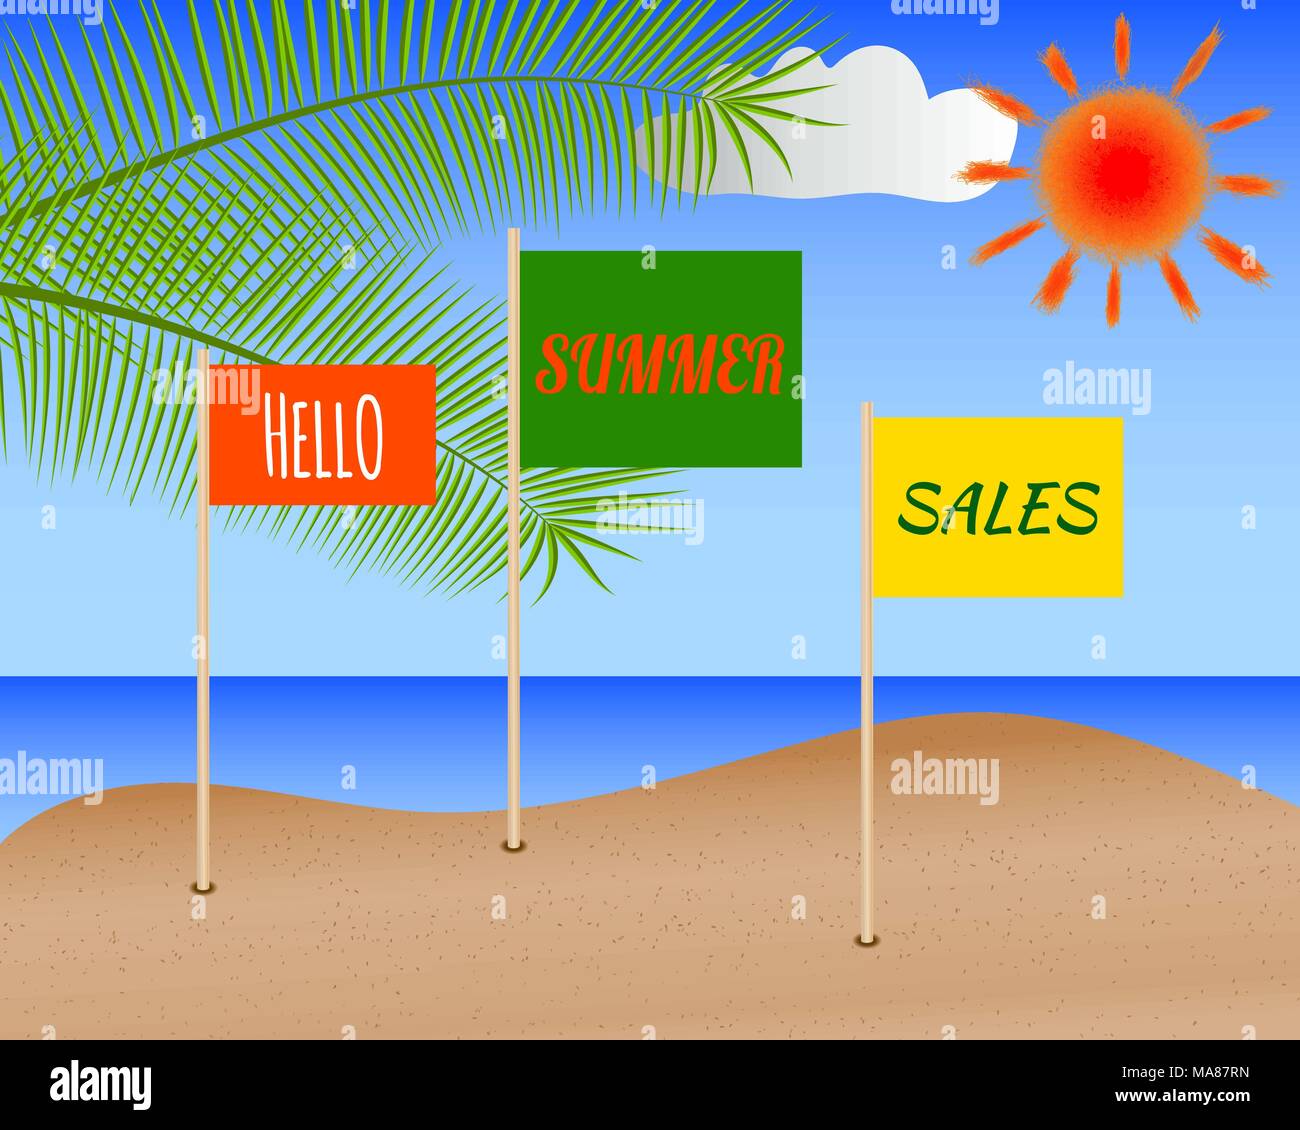 Shopping d'été poster. Vente en ligne de bannière avec seascape, soleil, feuilles de palmier et des drapeaux avec lettrage Bonjour vente d'été Illustration de Vecteur